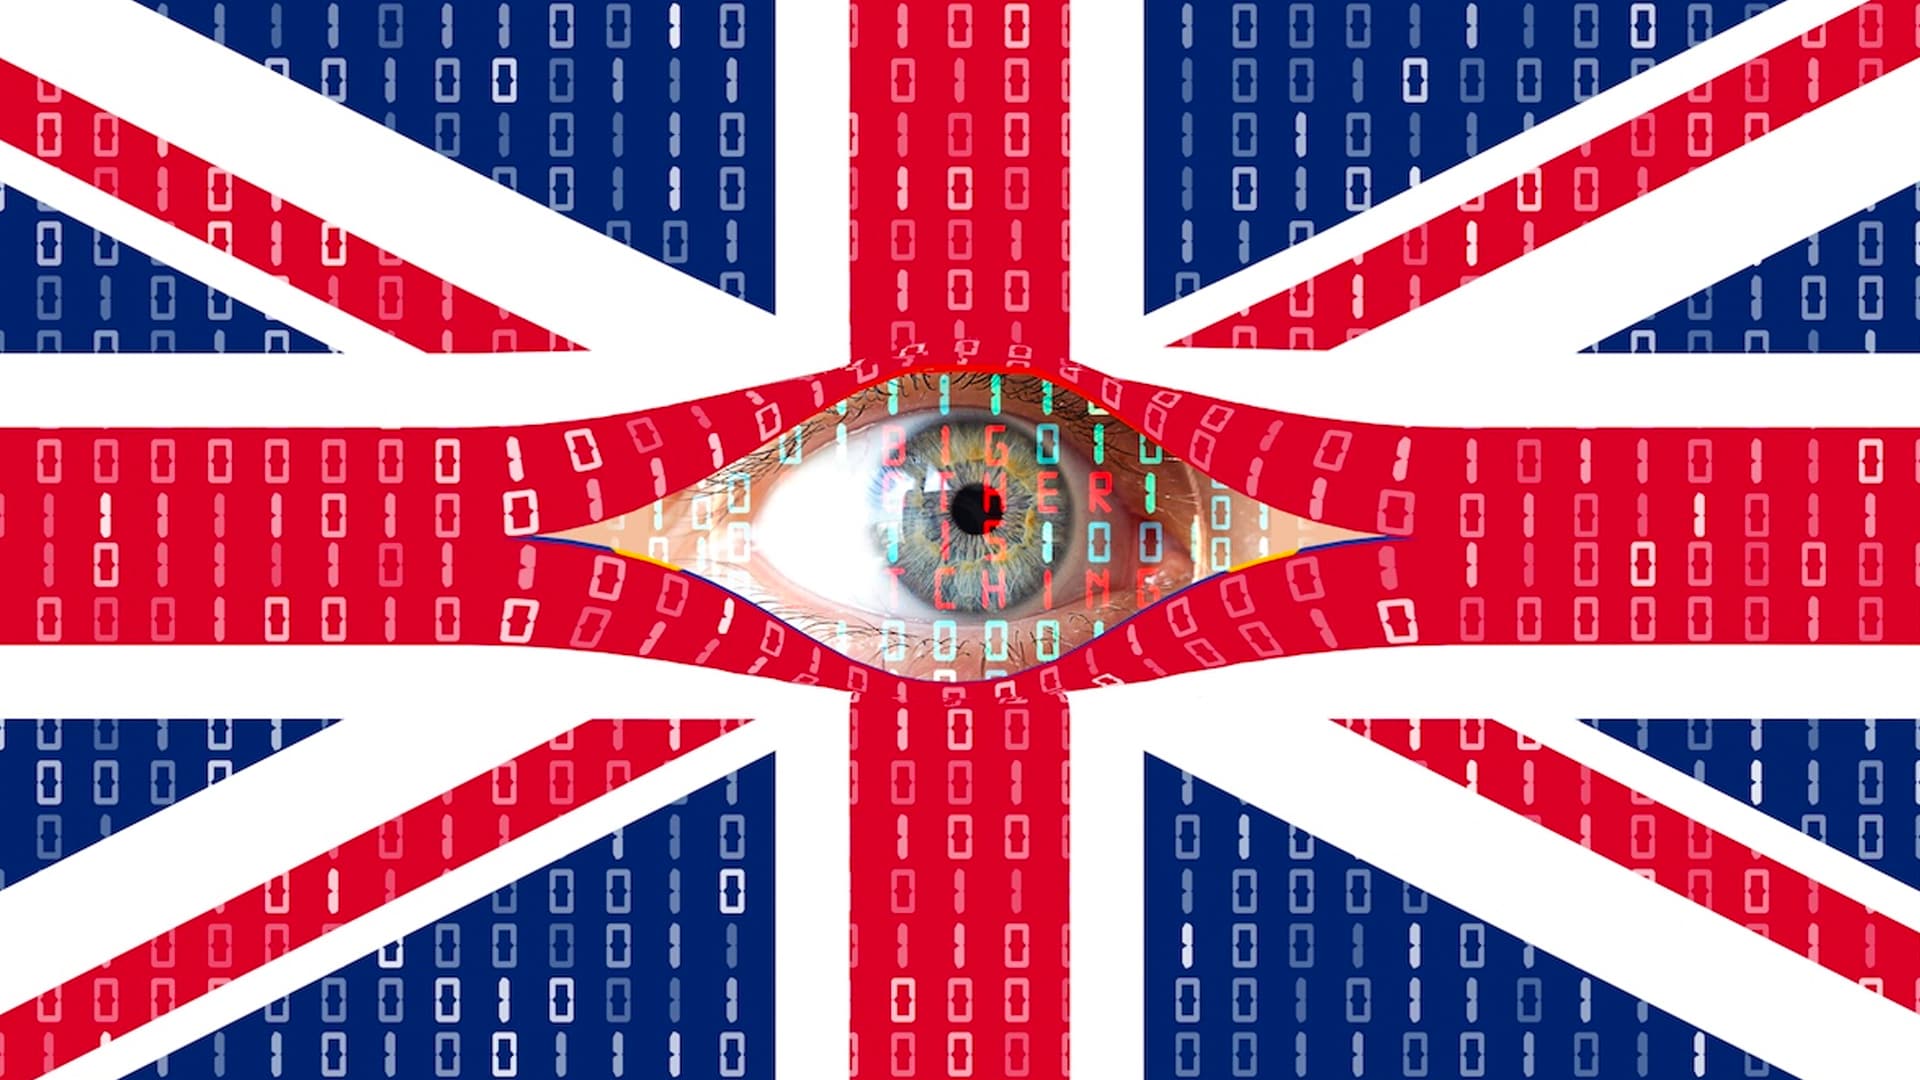 باز کردن جعبه پاندورا: انگلیس ممکن است در حال برنامه ریزی برای مسدود کردن رمزگذاری در سرویس های دیجیتال باشد، از گروه های فناوری می ترسد